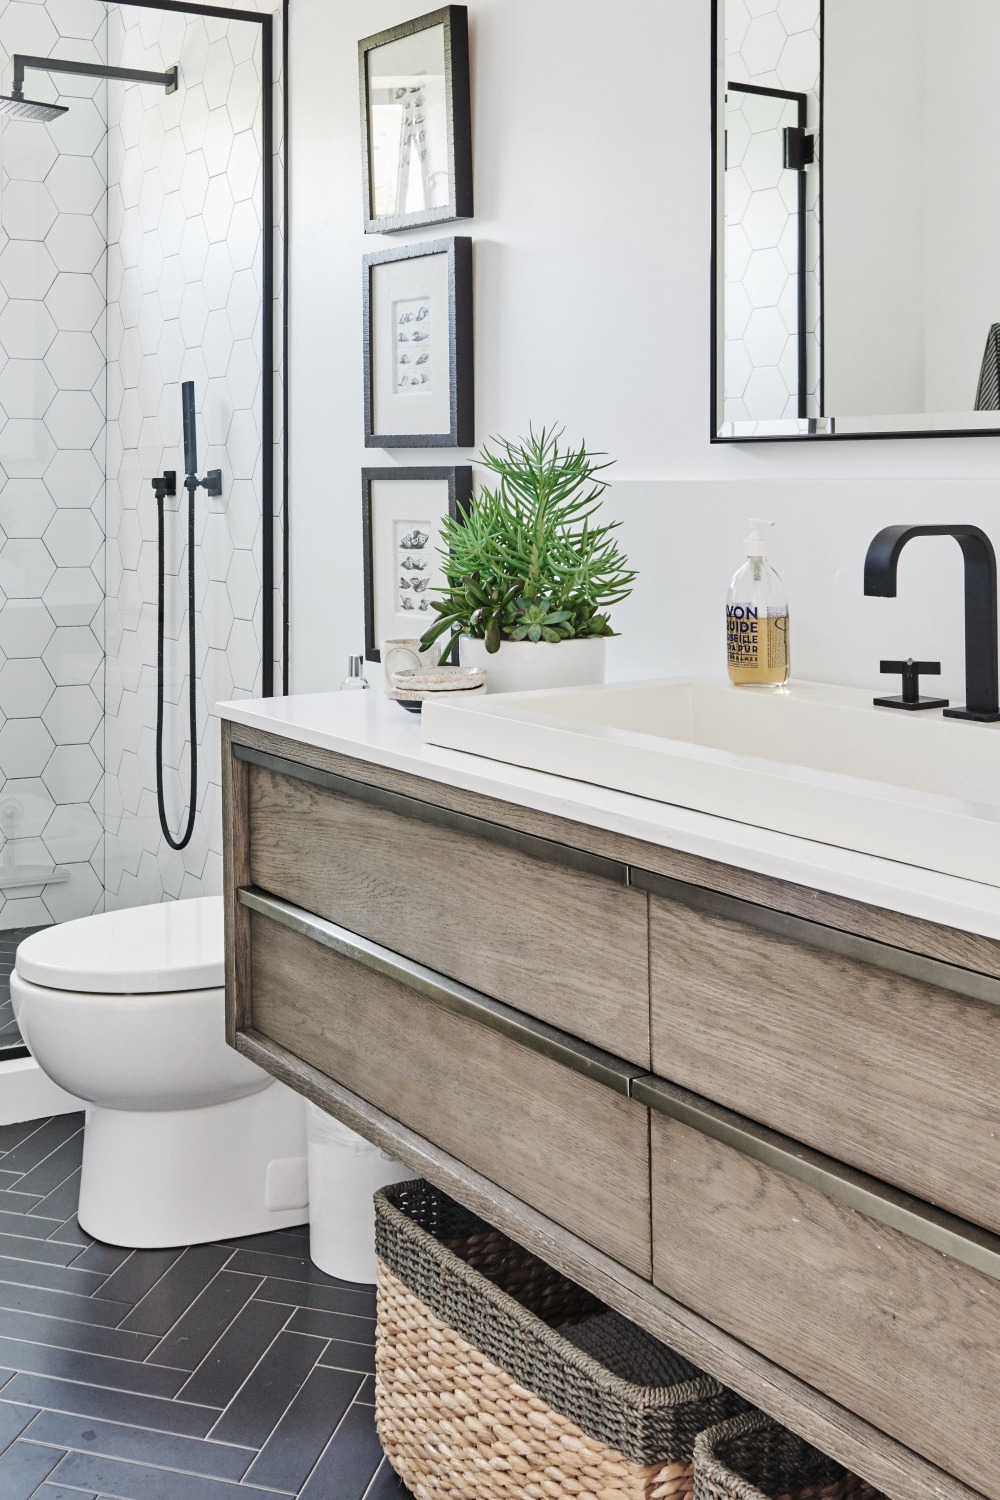 Shower Conversion Bathroom Remodel General Contractor Bathtub Walls Vanity Room Space Tile